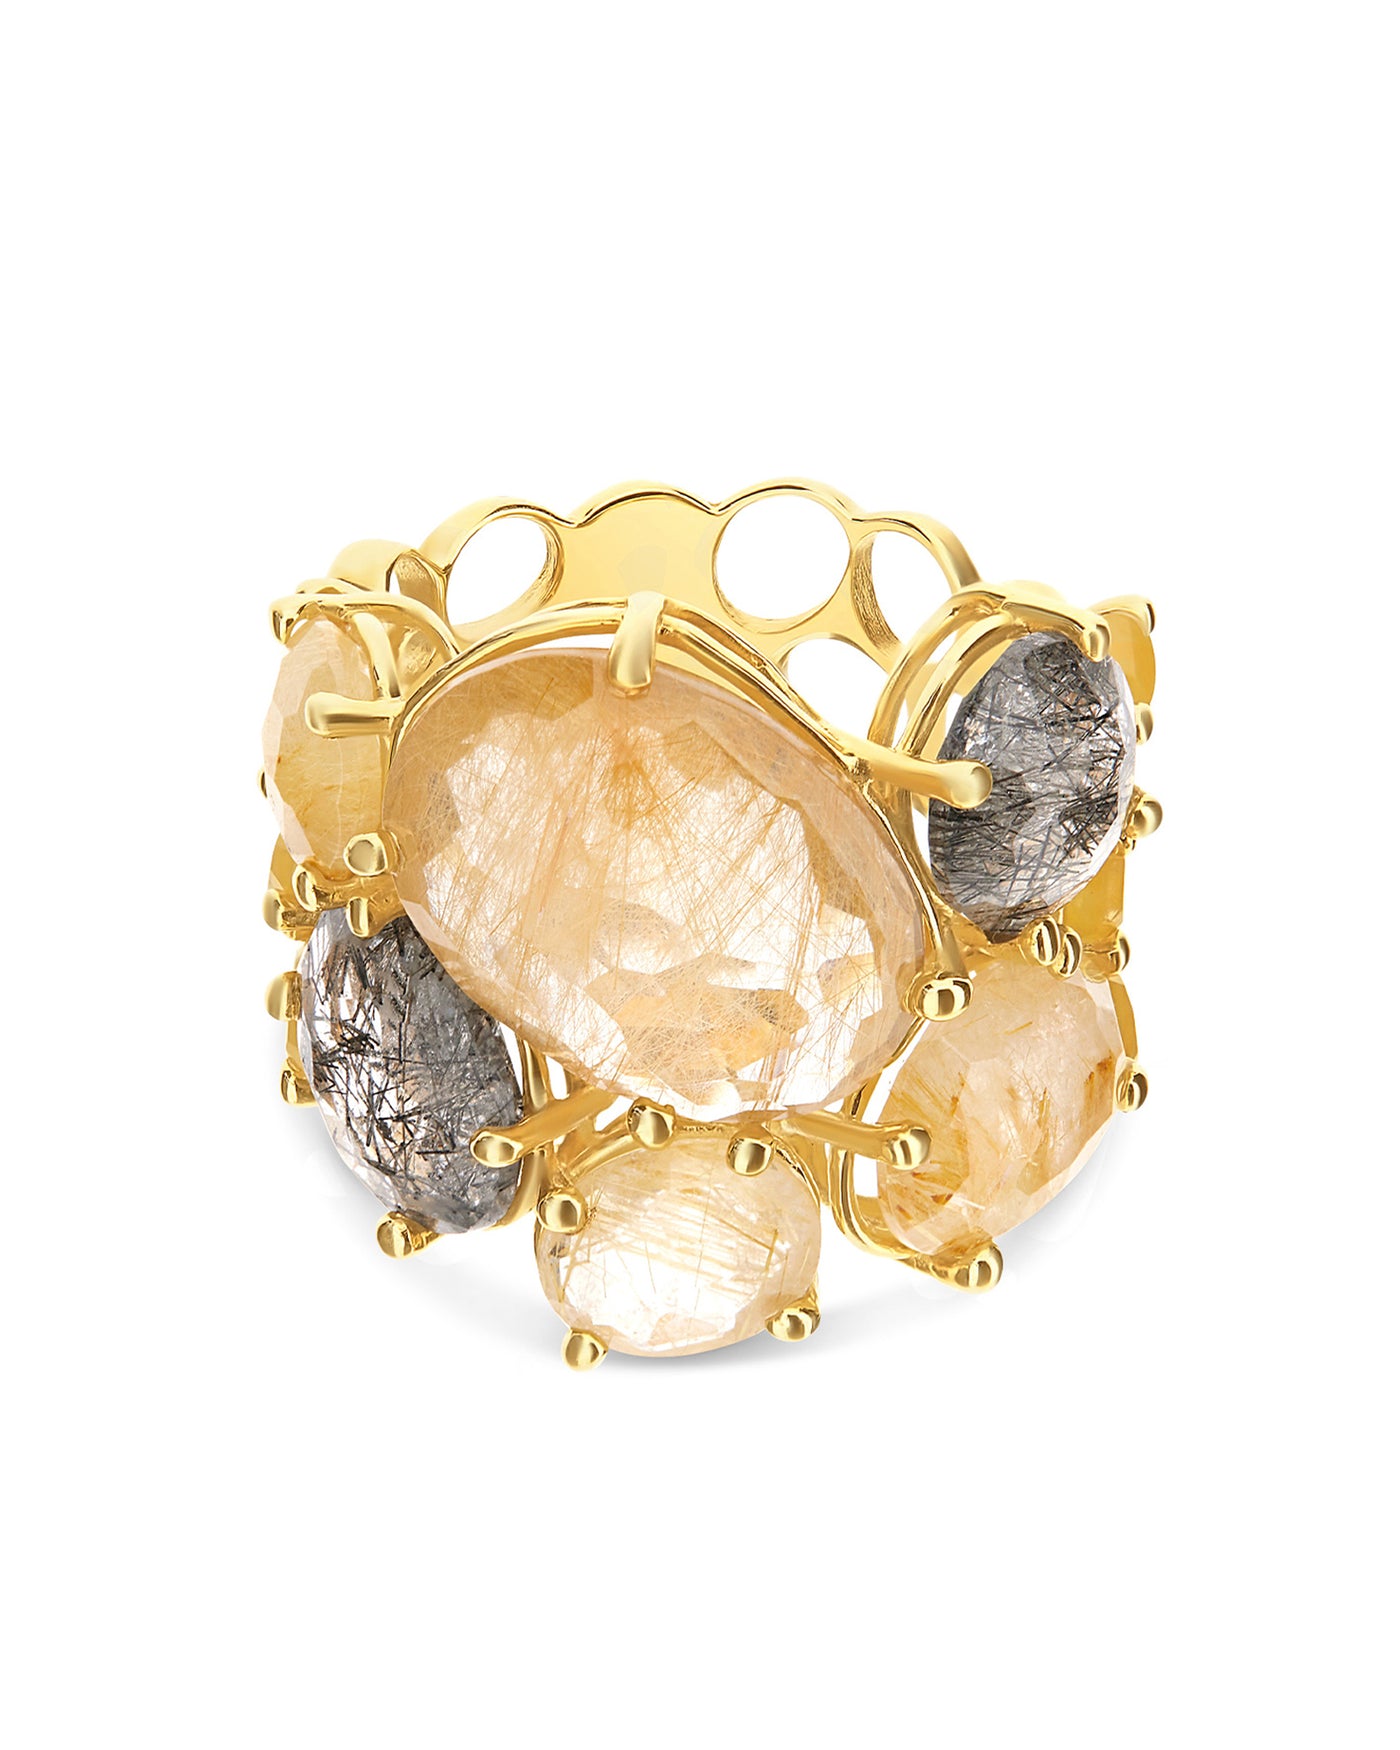 "ipanema" gold and rutilated quartz band ring